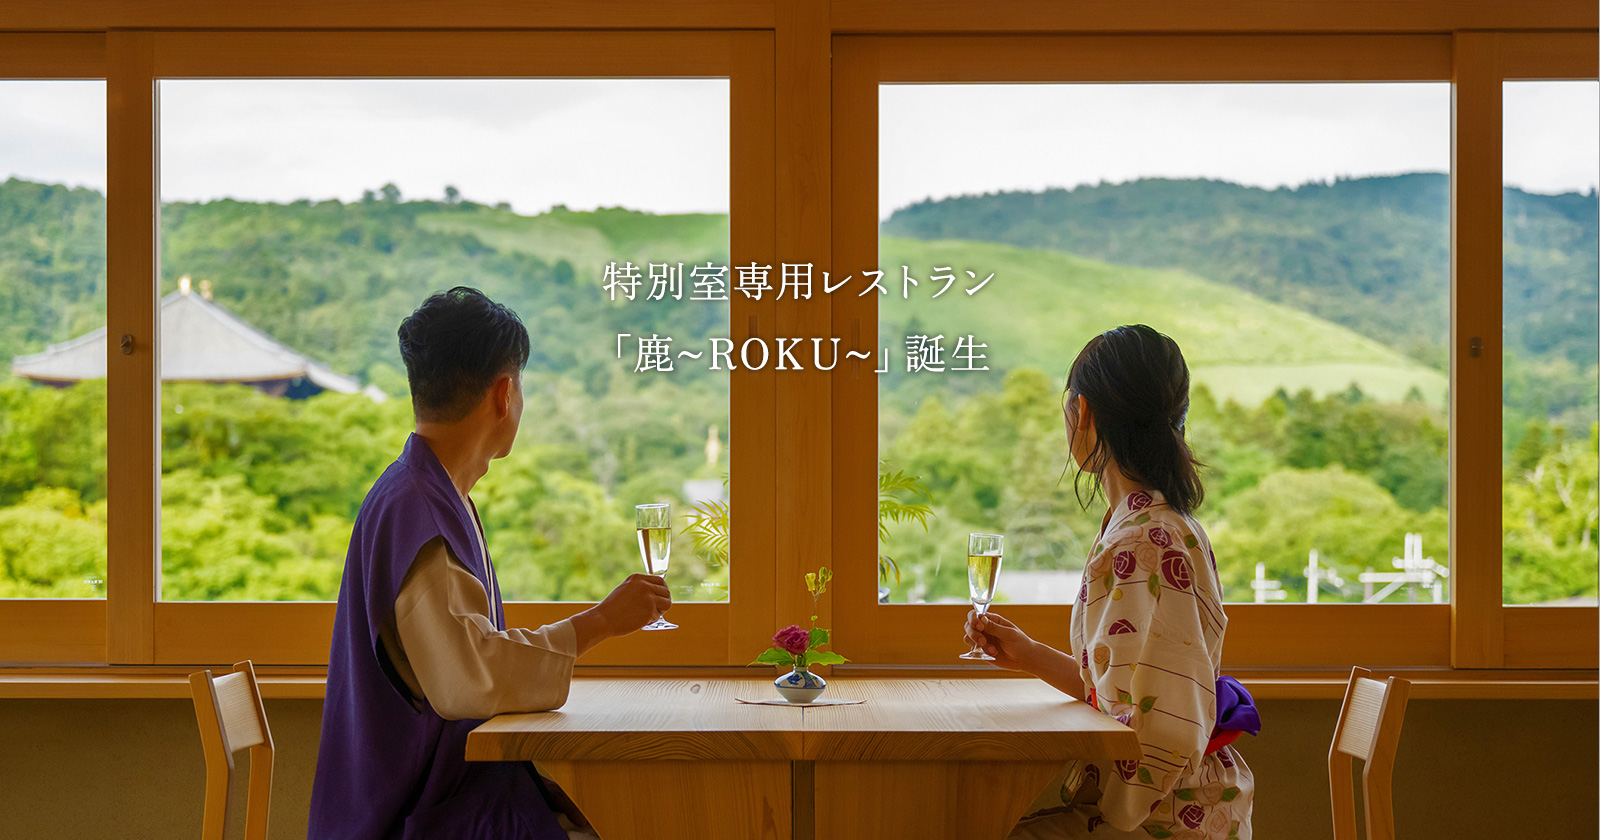 奈良の旅館でご宿泊 ホテルニューわかさ【公式ホームページ】